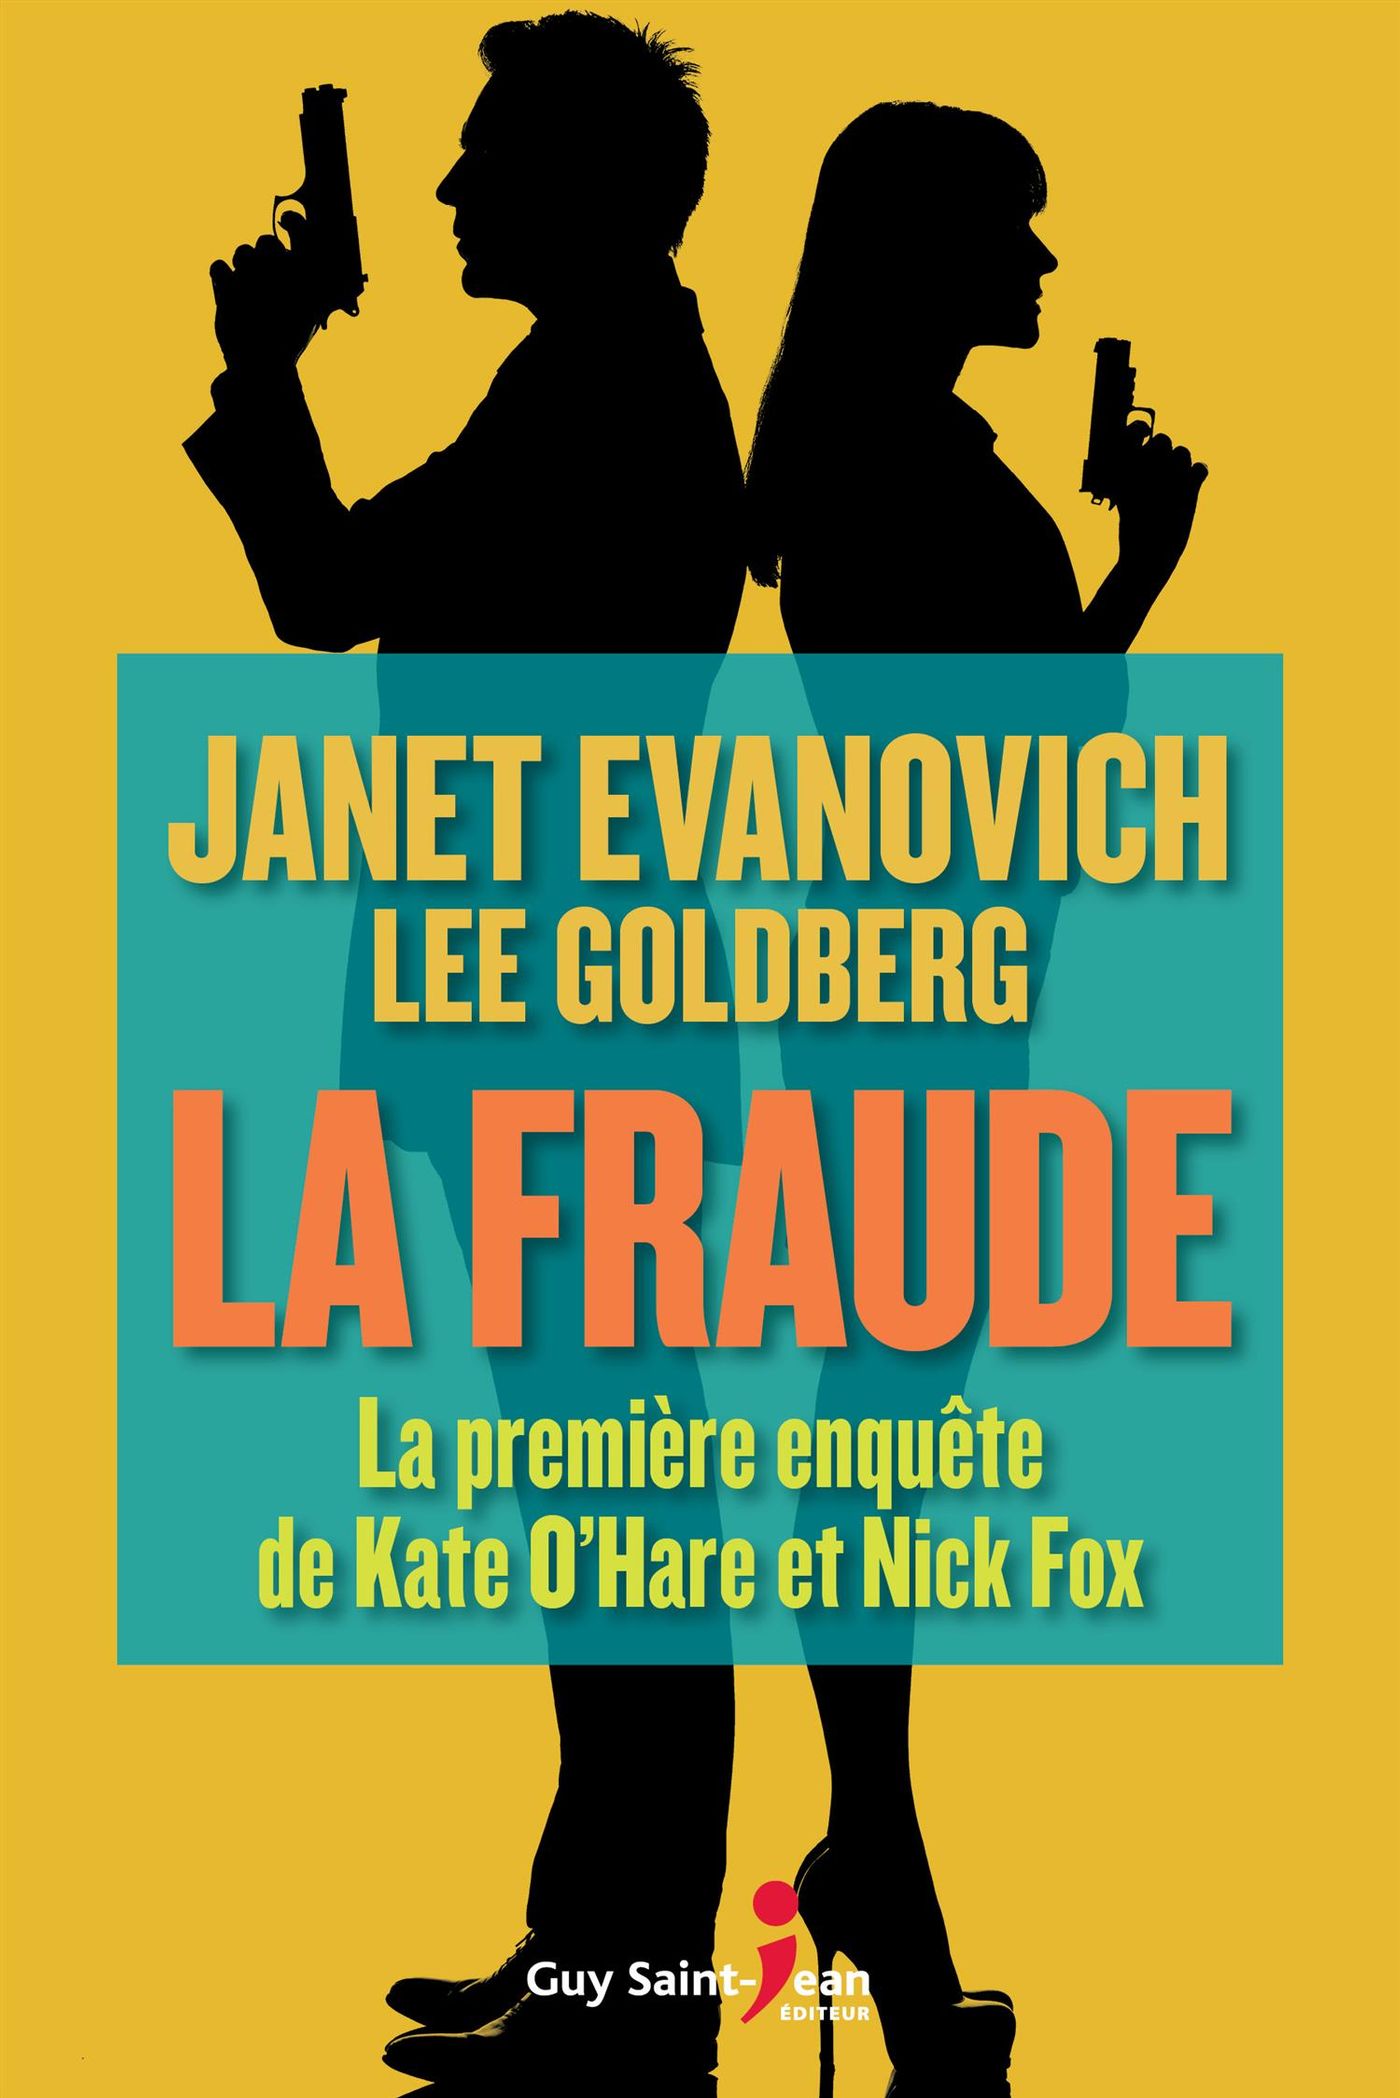 La fraude : La première enquête de Kate O'Hare et Nick Fox - Janet Evanovitch